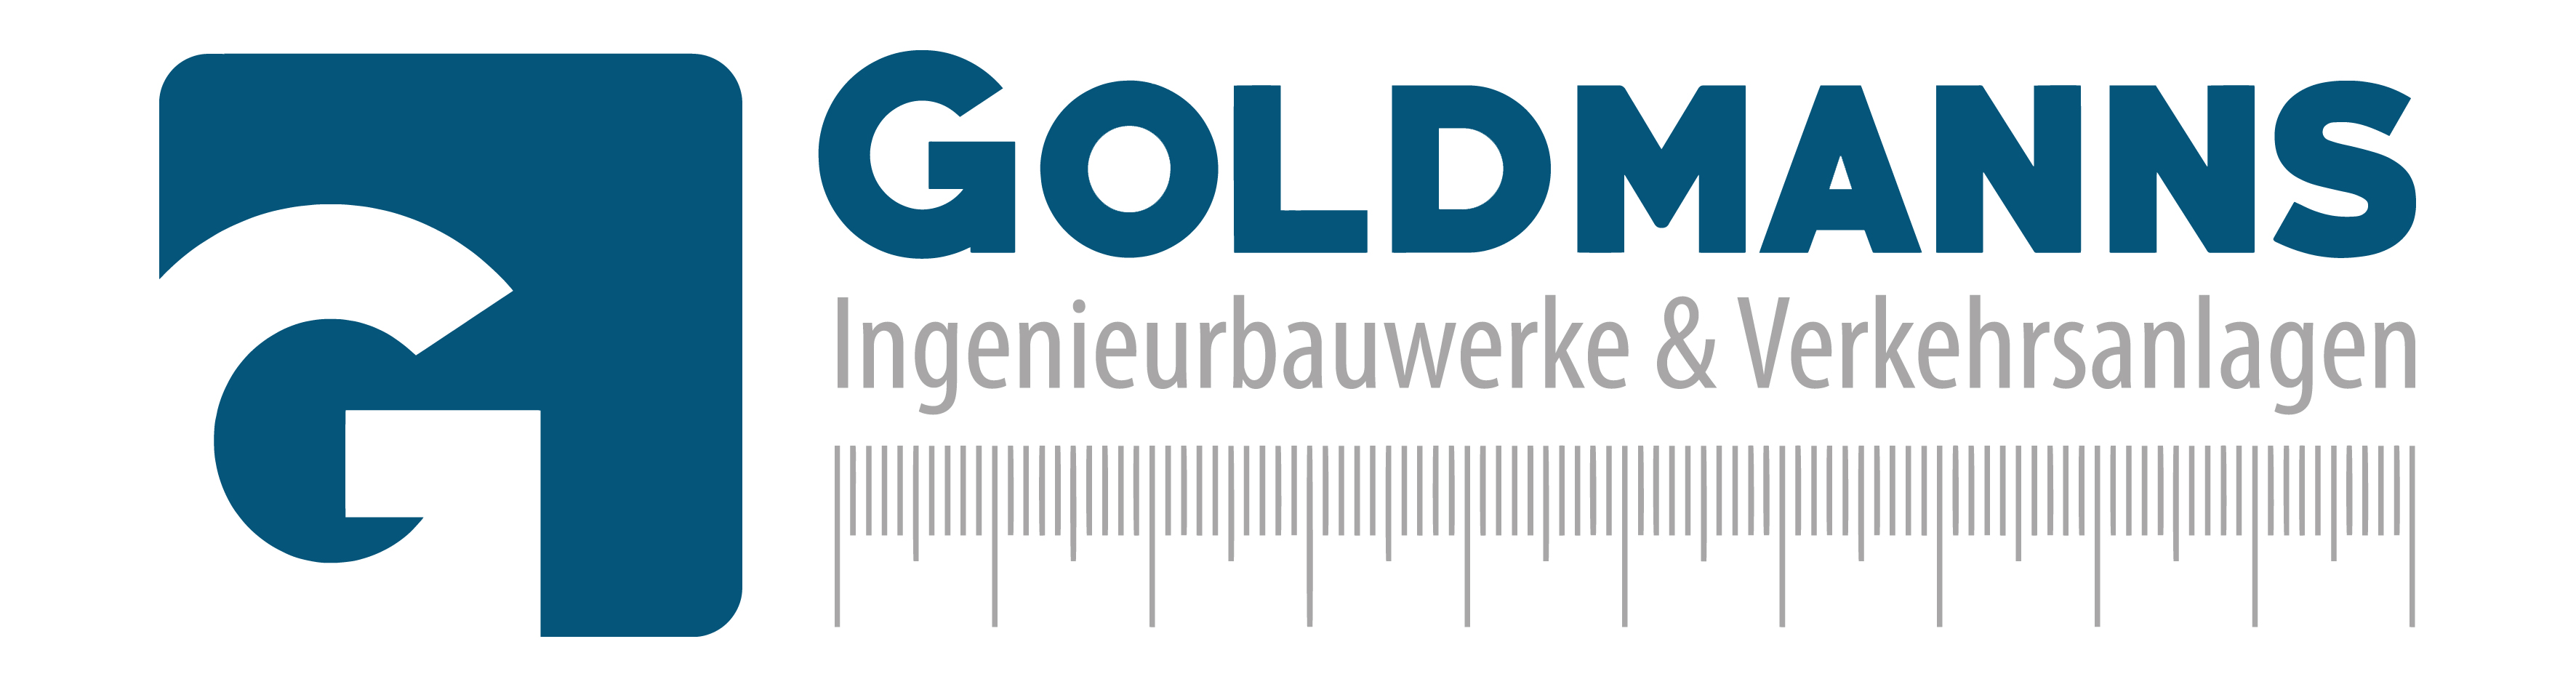 Goldmanns_Logo.jpg